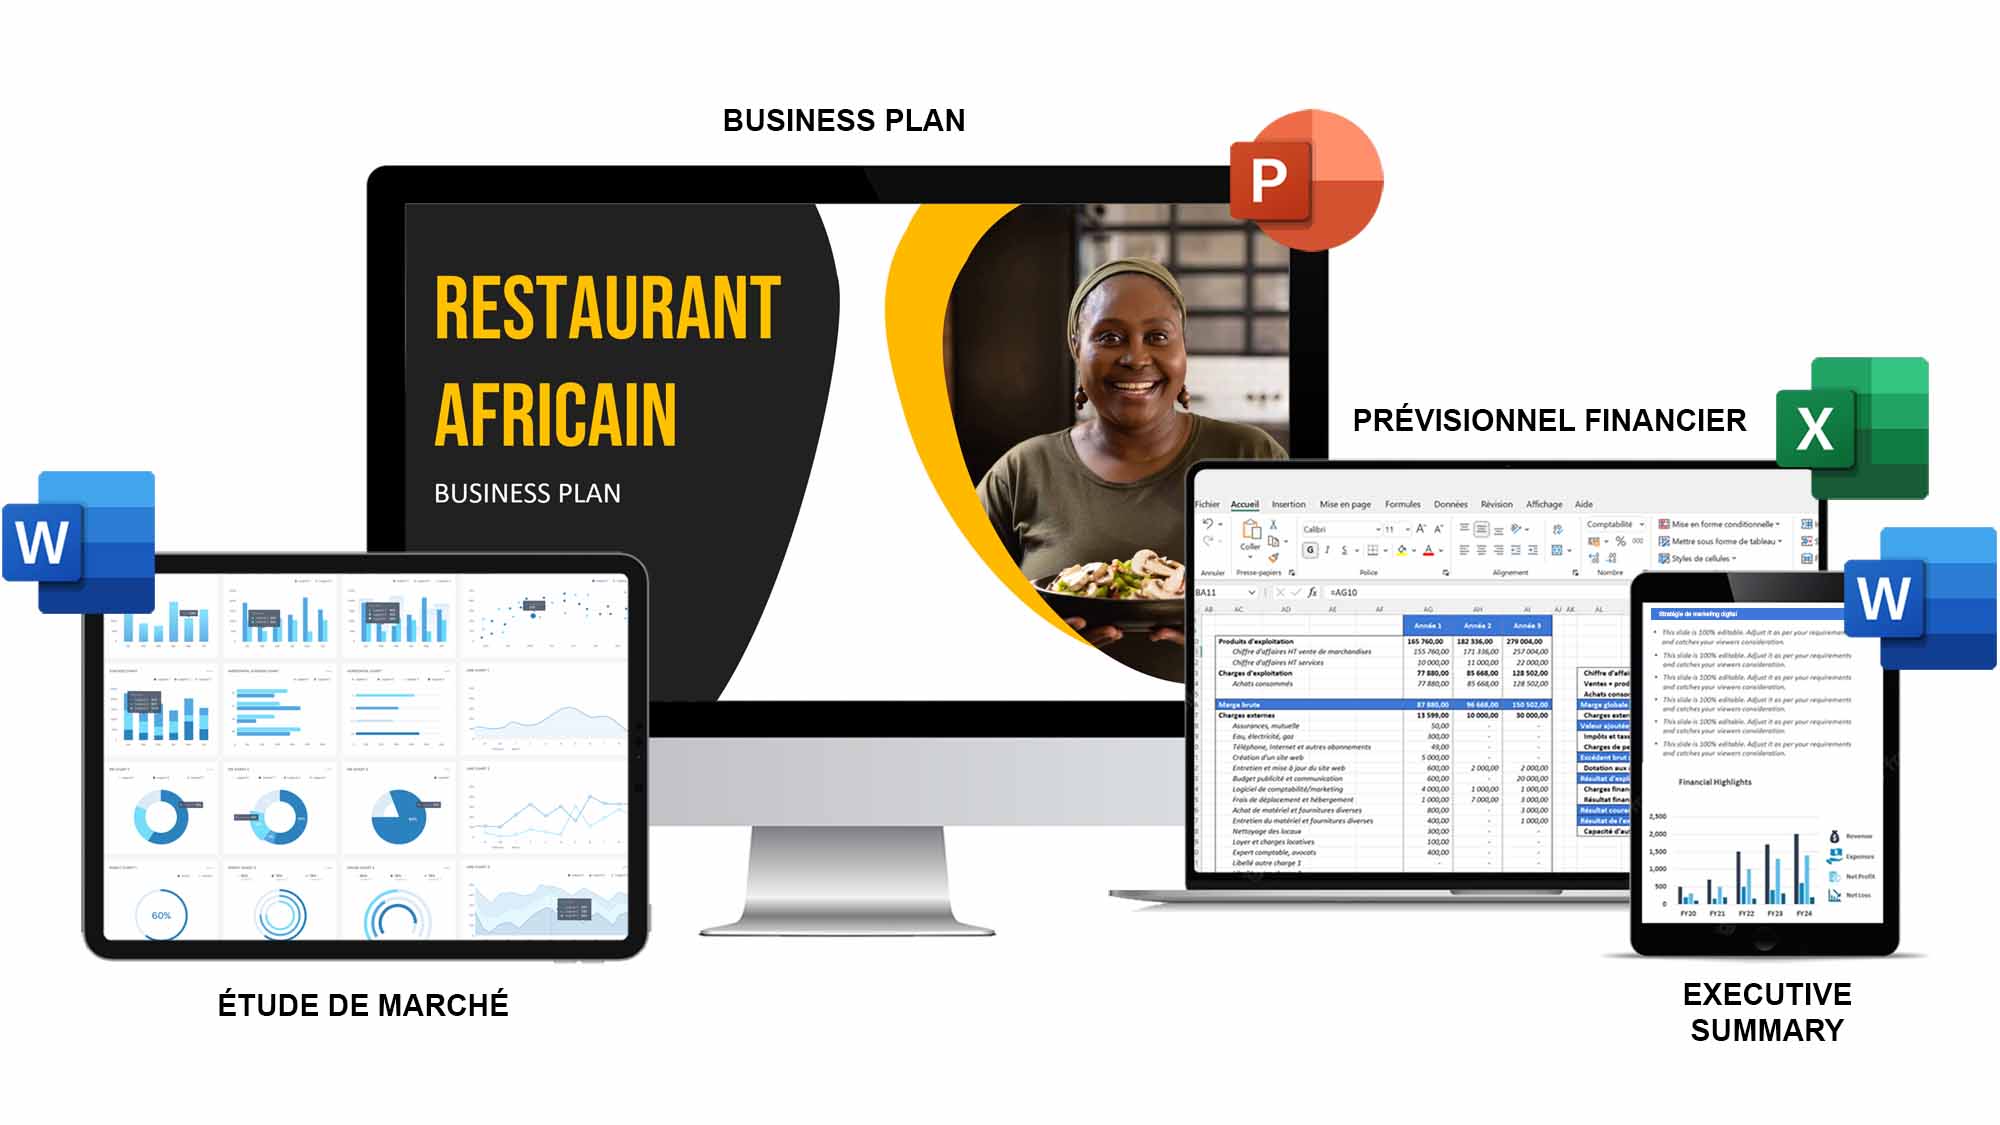 business plan d'un restaurant au cameroun pdf